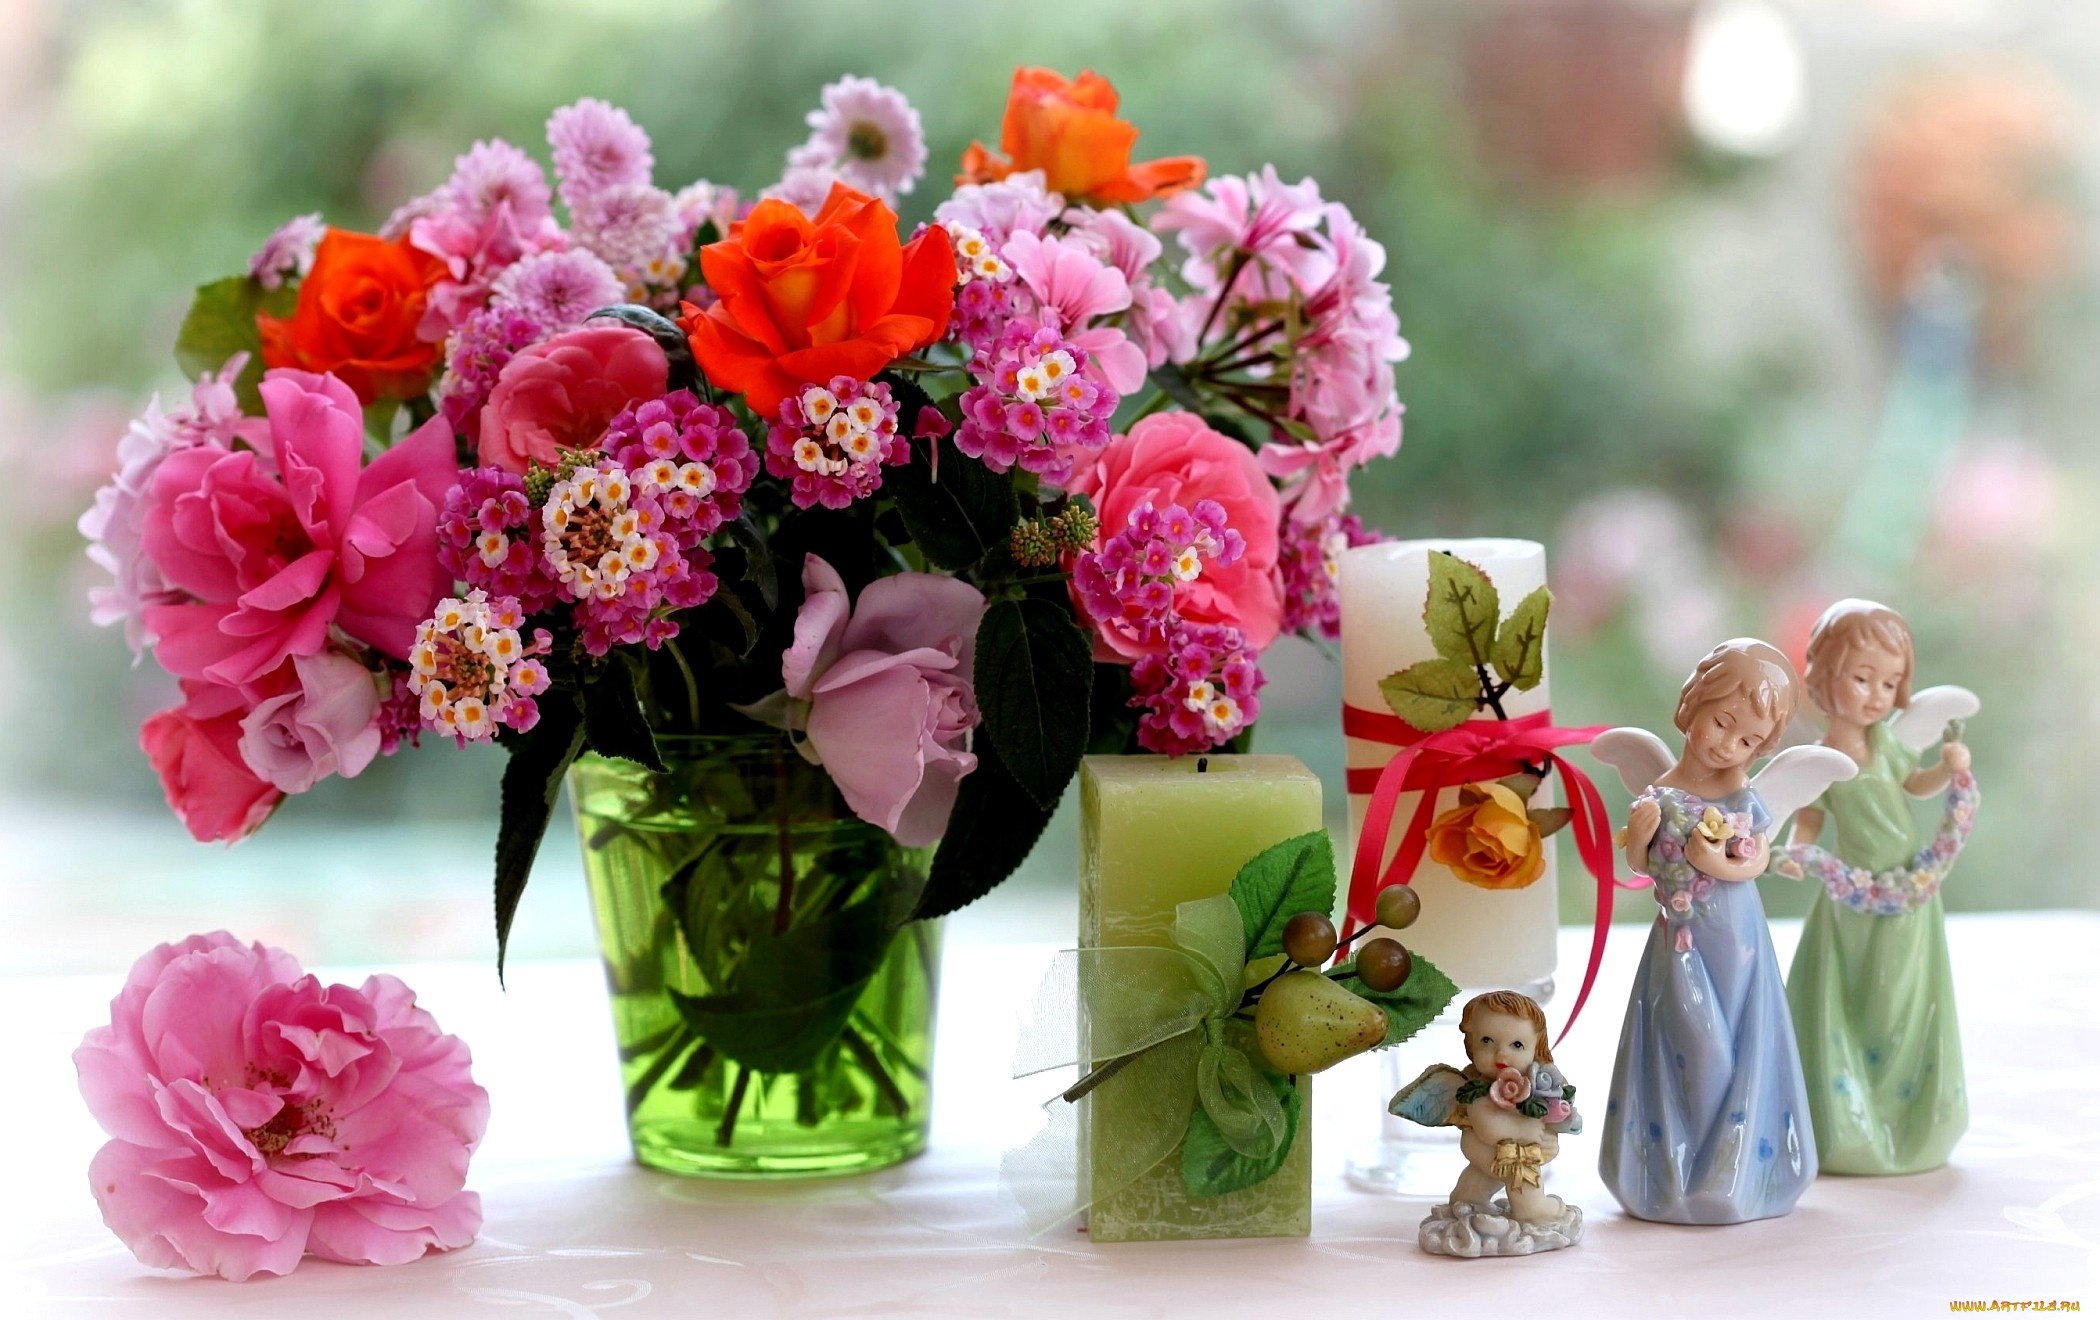 цветы, букеты, композиции, лантана, хризантемы, розы, ангелочки, фарфор, фигурки, свечи